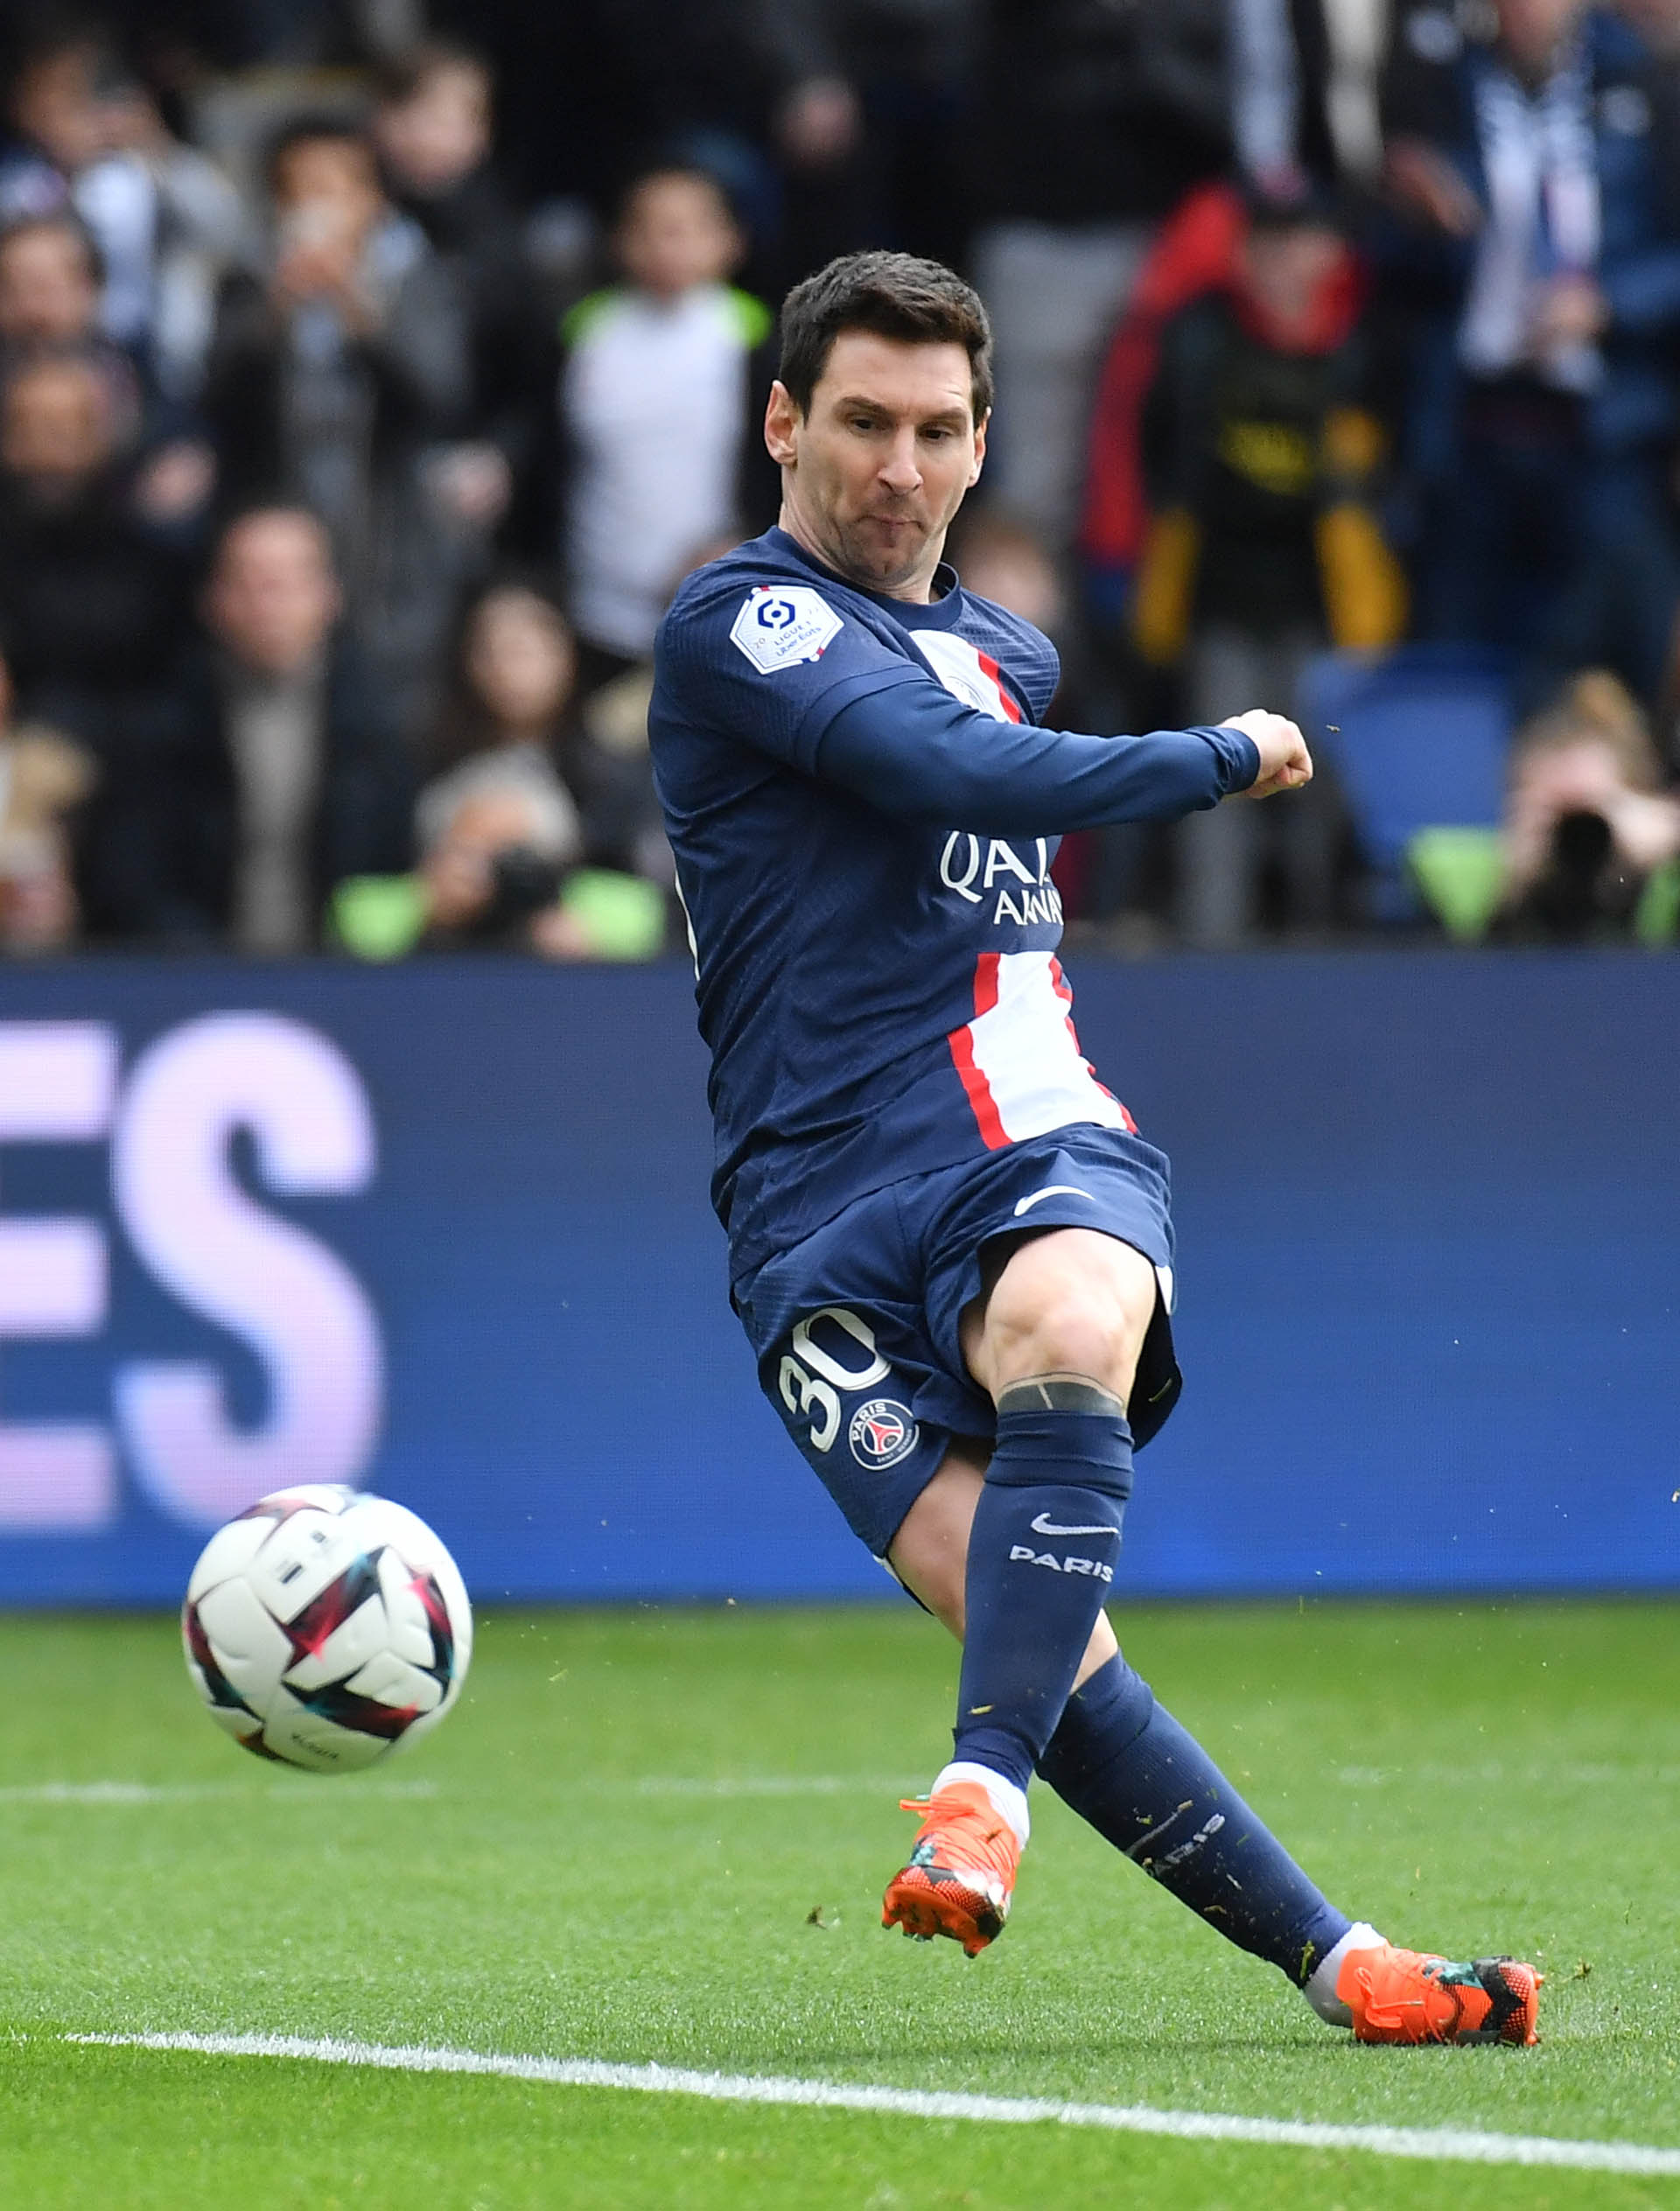 El instante exacto en el que Messi dispara el tiro libre que definirá 4-3 el duelo entre PSG y Lille (Christian Liewig - Corbis/Corbis via Getty Images)